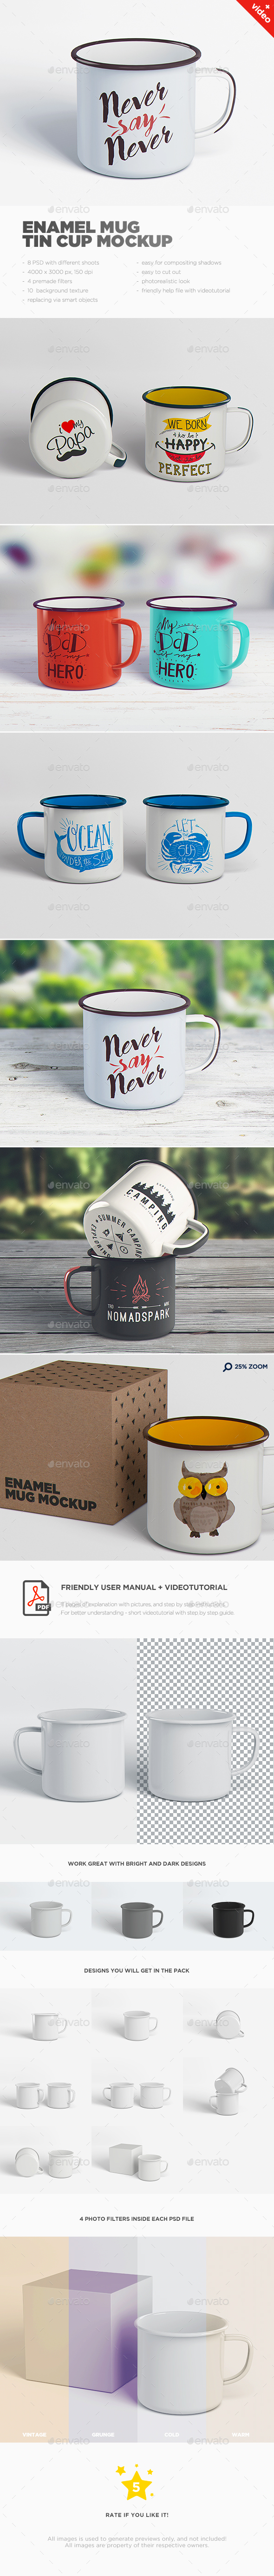 Download Enamel Mug / Tin Cup MockUp by goner13 | GraphicRiver